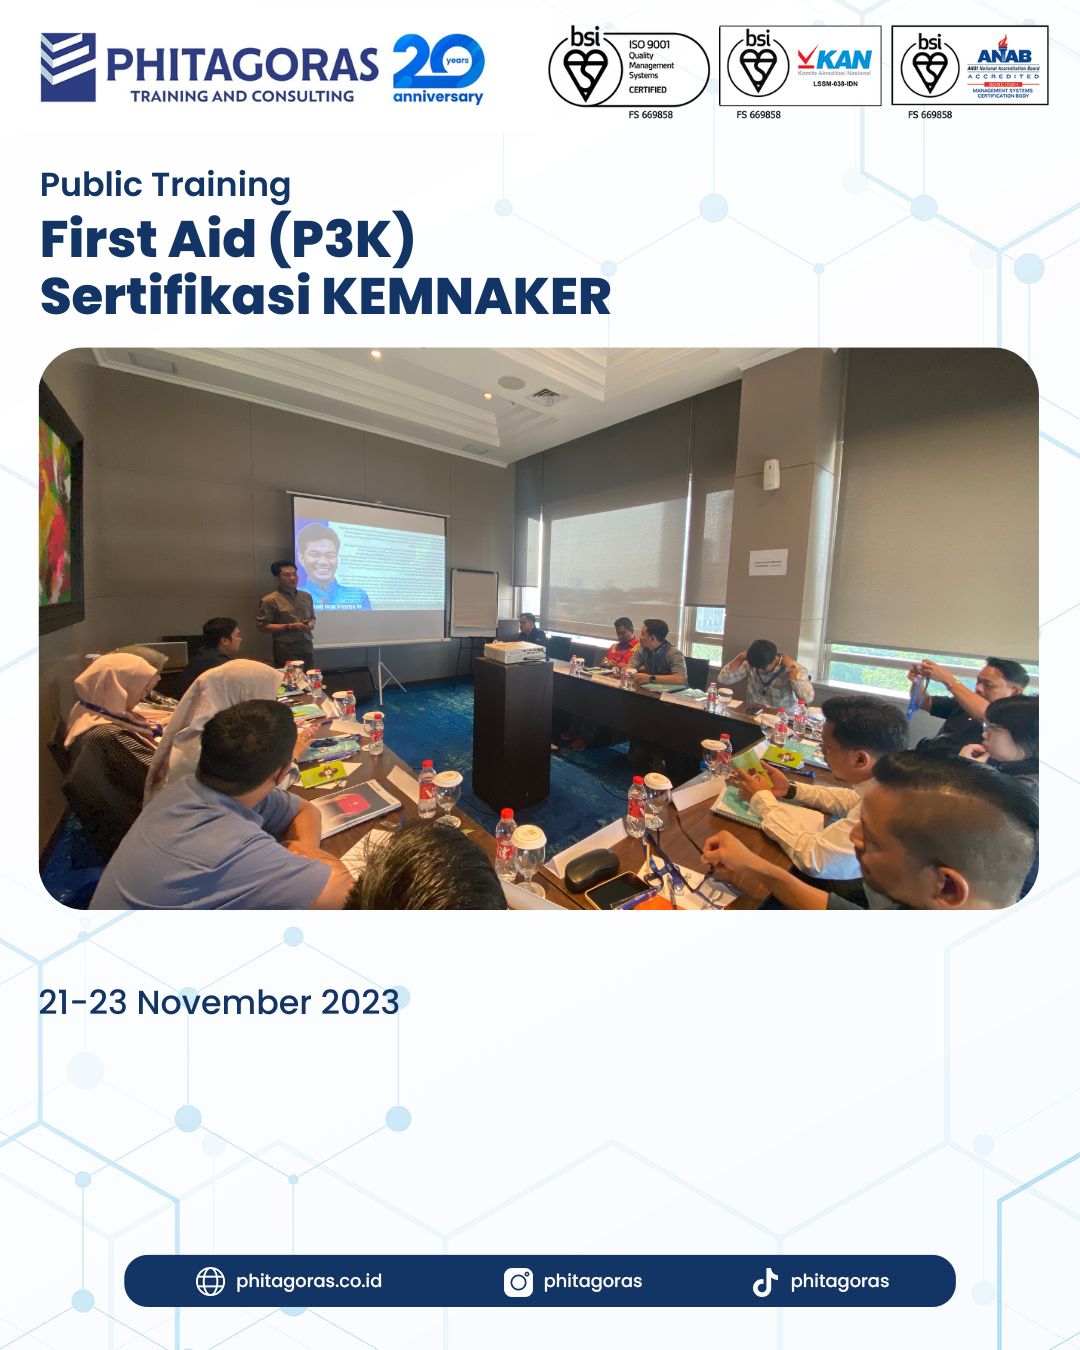 Public Training First Aid (P3K) Sertifikasi KEMNAKER 21 - 23 November 2023